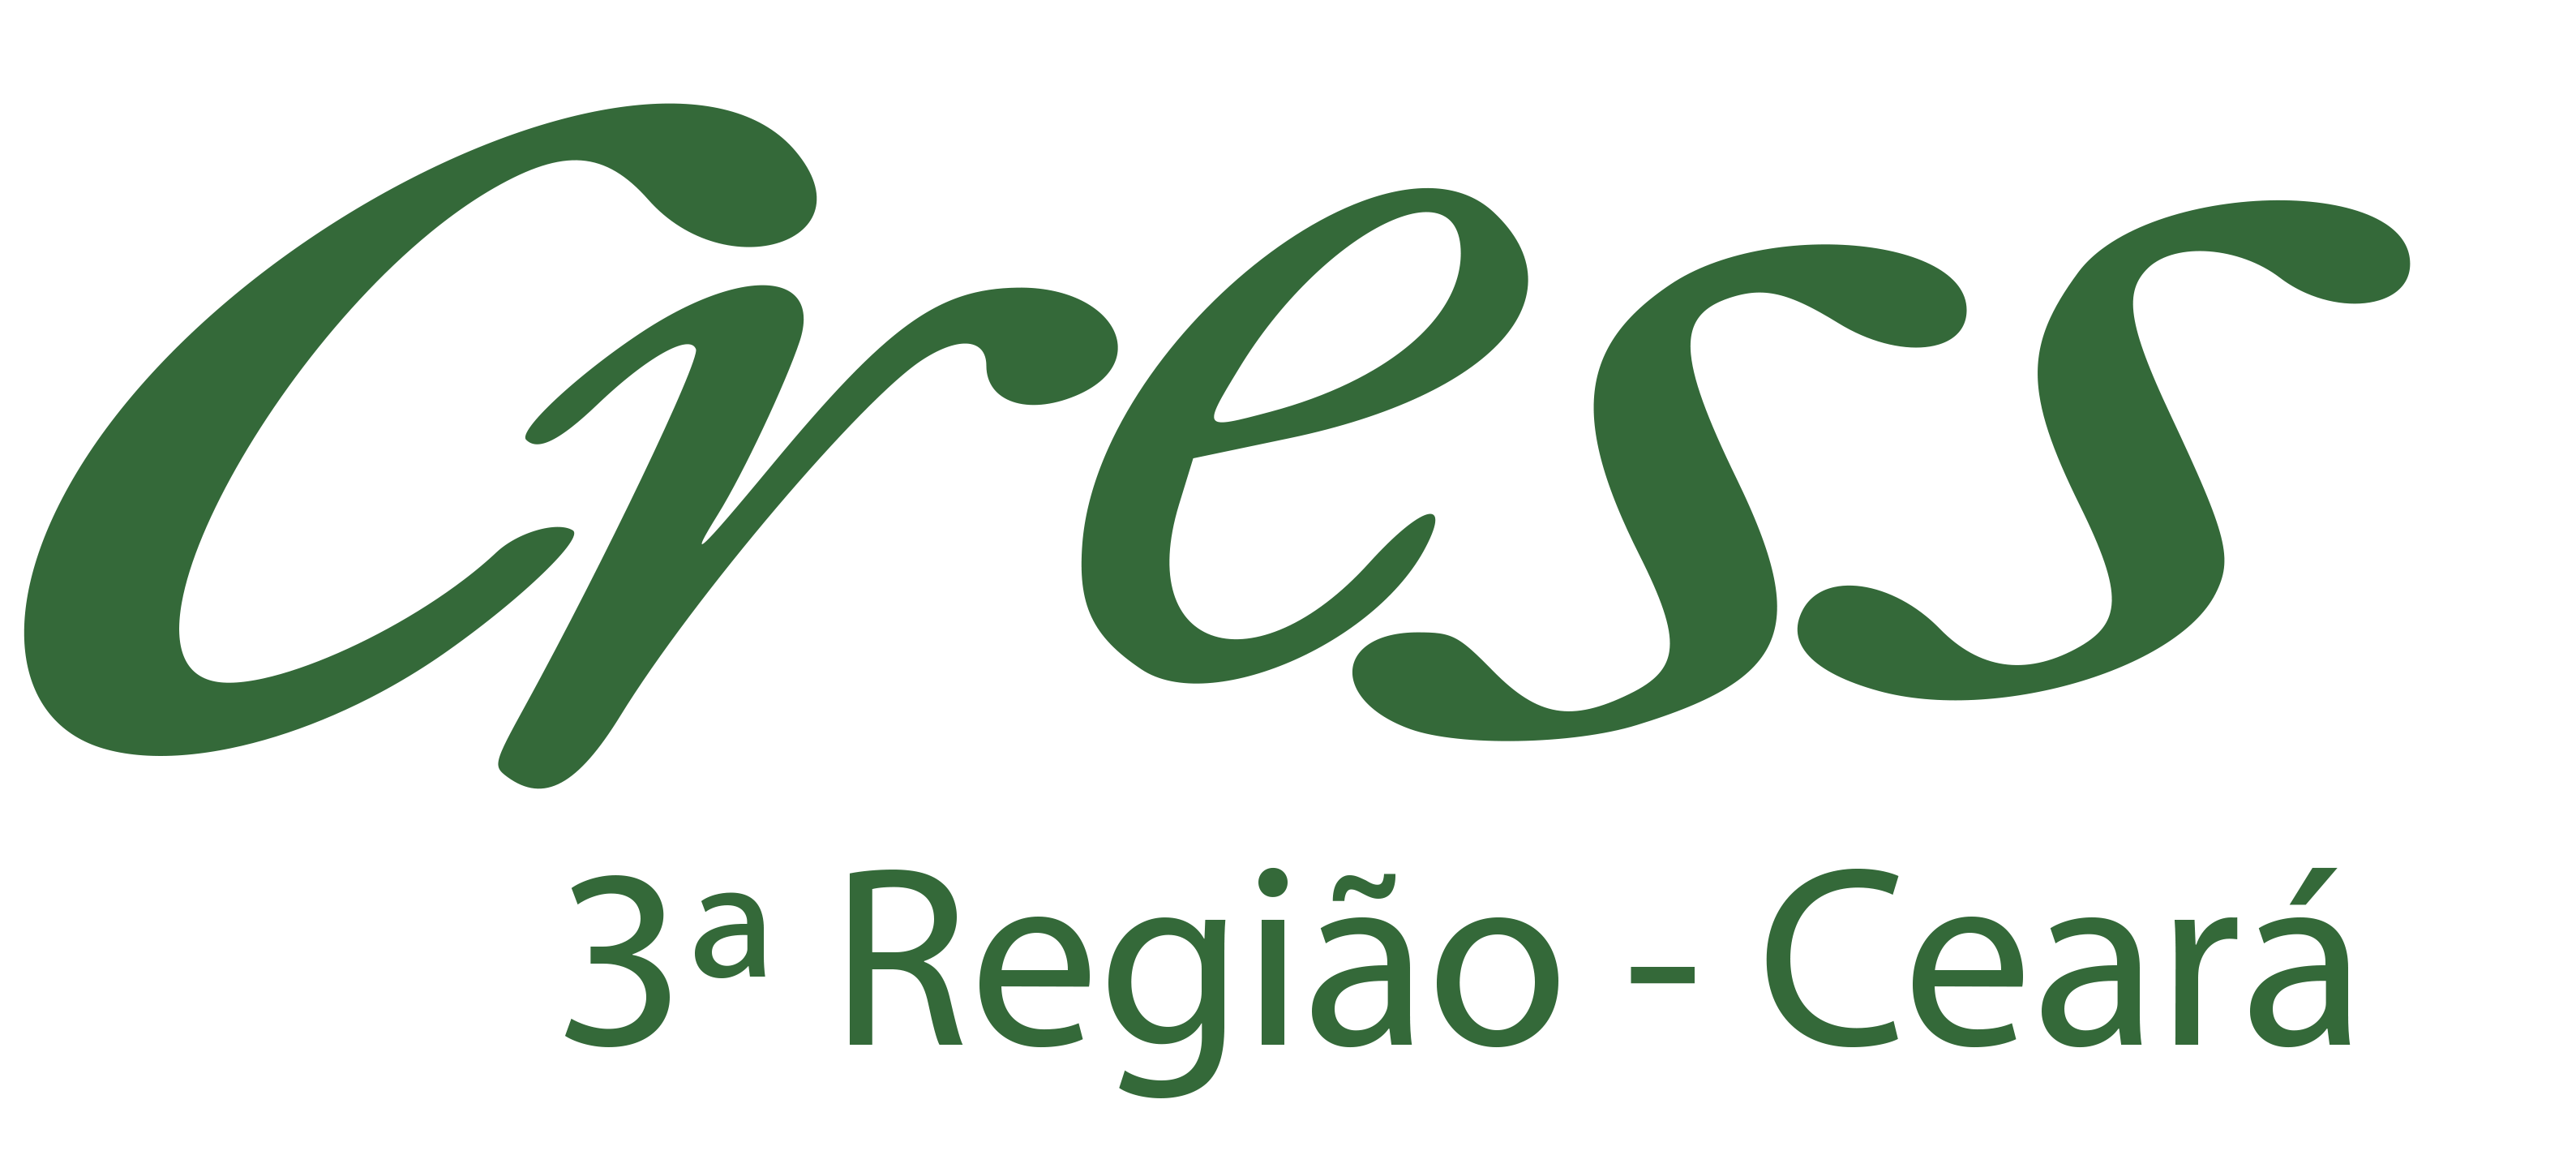 Cress Ceará - Conselho Regional de Serviço Social - 3ª Região - Ceará